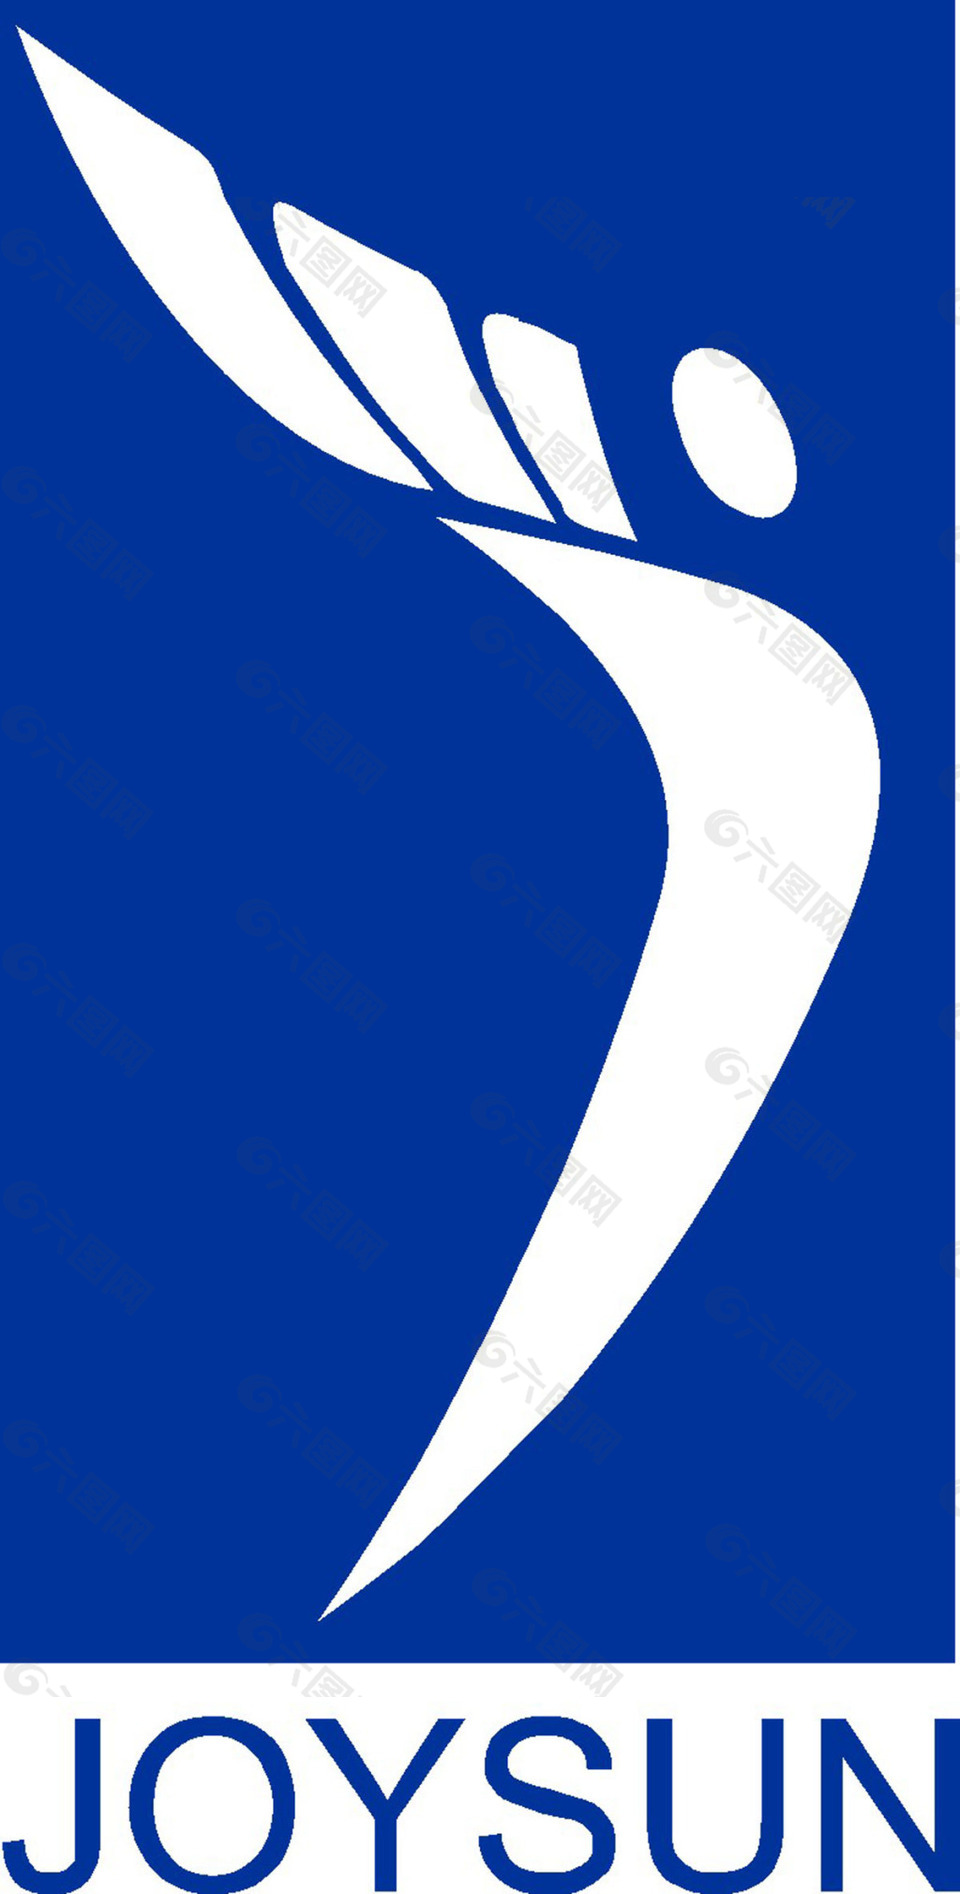 个性化logo素材矢量图LOGO设计